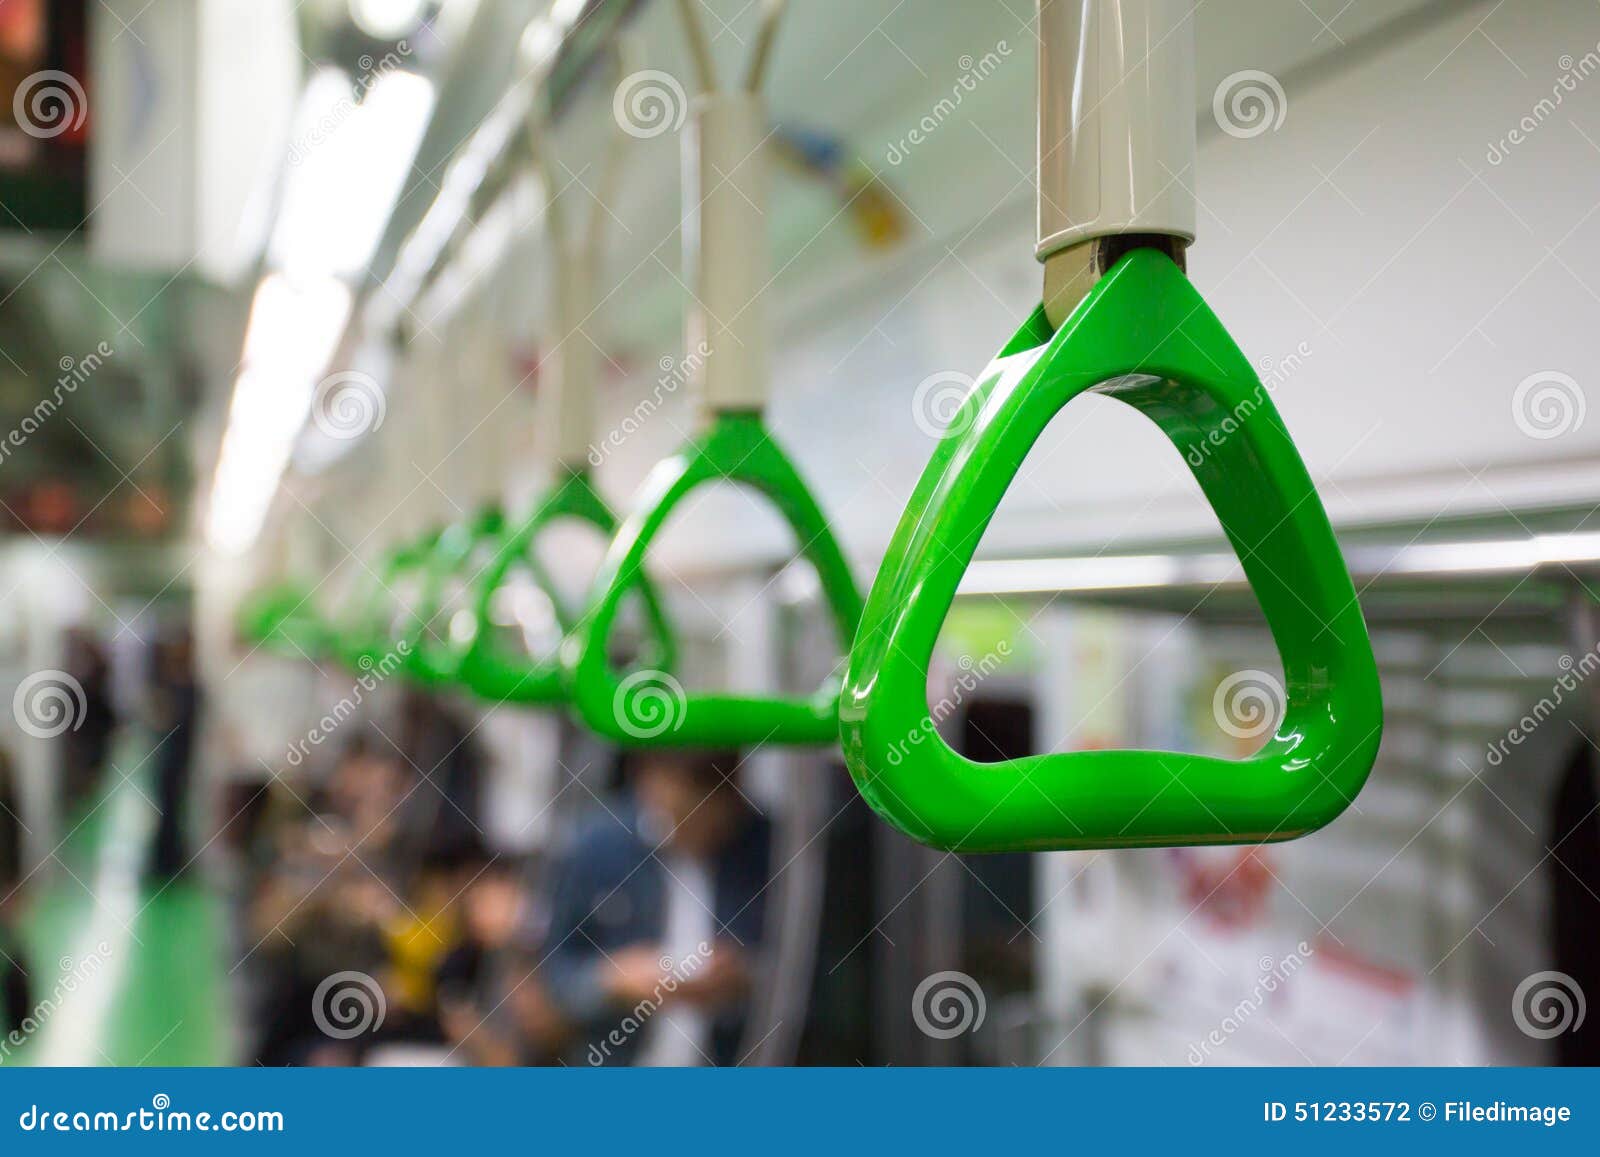 Zug-Wagen-Griff. Ein Griff für Passagiere in einem Seoul-Untergrundbahnwagen